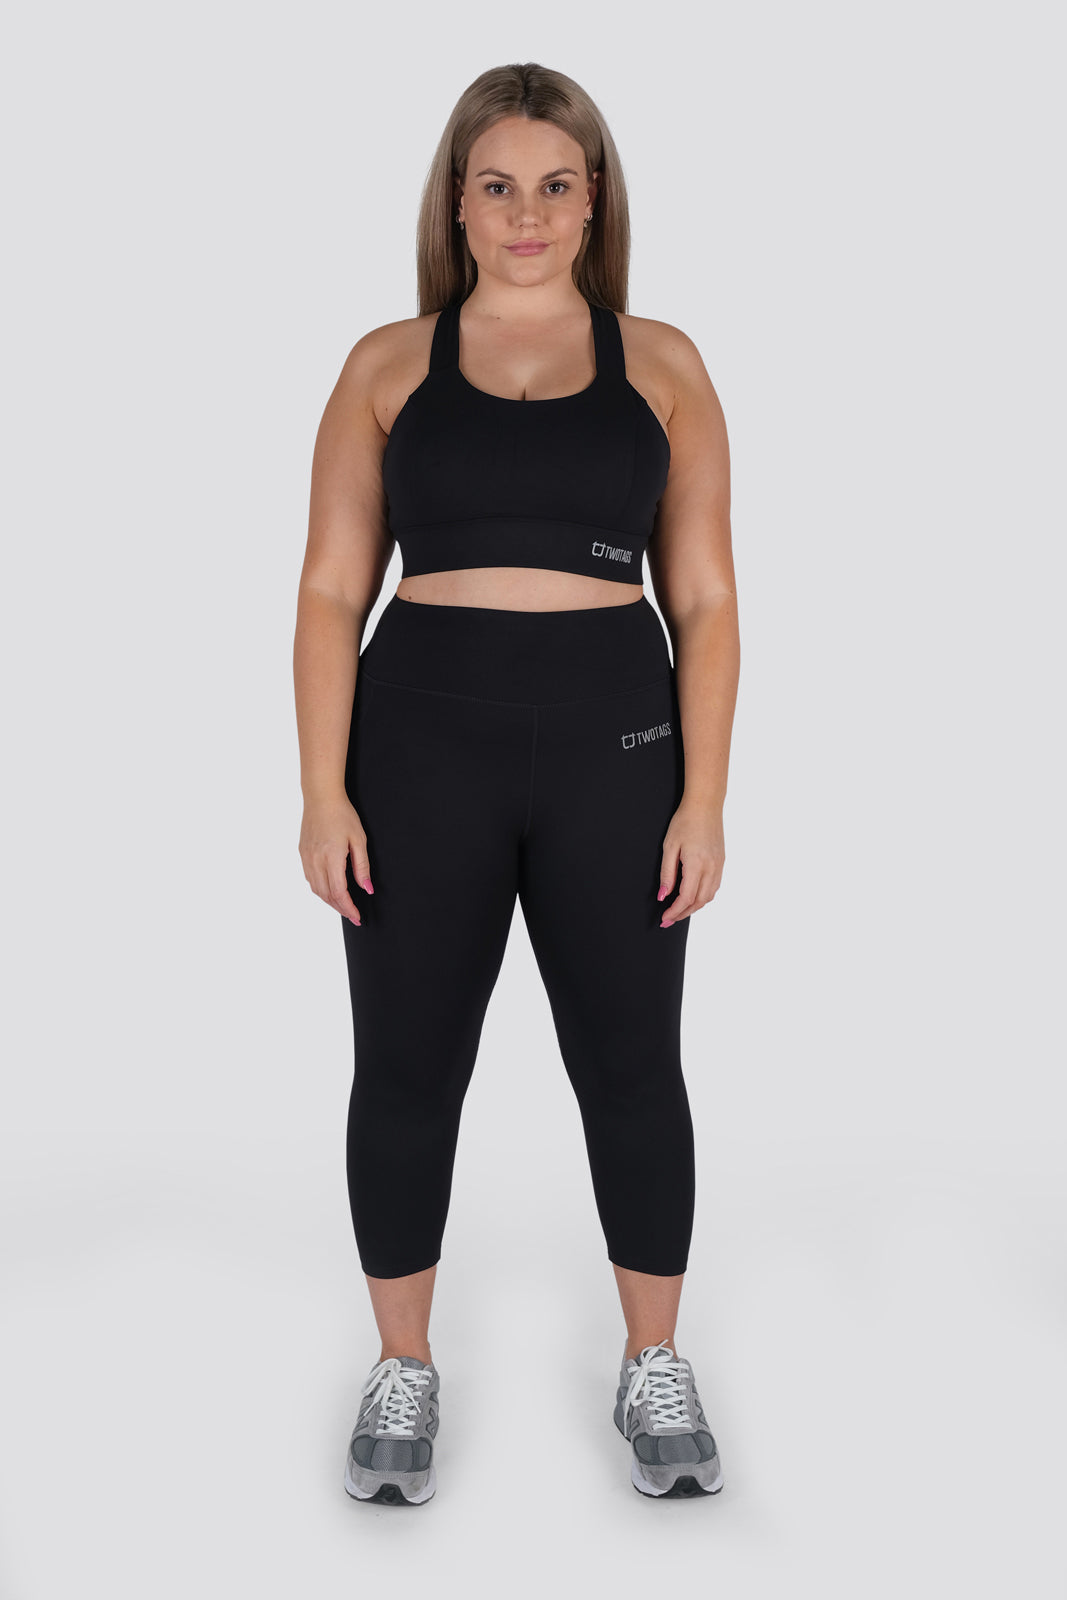 Zella Parachute Pants Womens Size 10 Black Dance Ruched Yoga Gym Active  Baggy